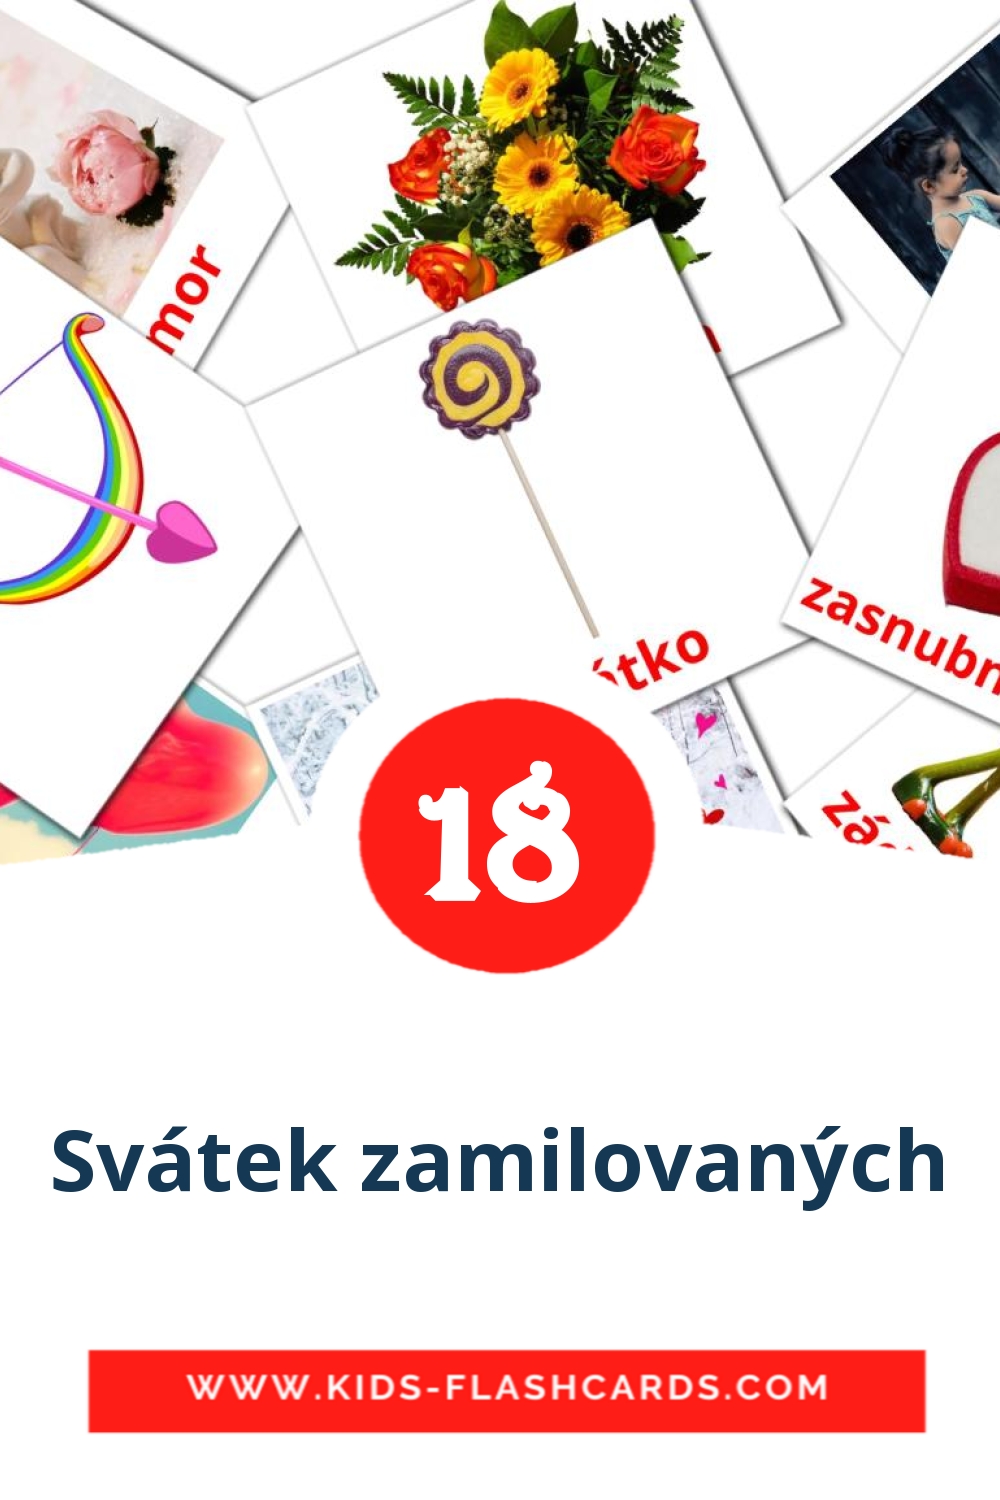 18 carte illustrate di Svátek zamilovaných per la scuola materna in ceco